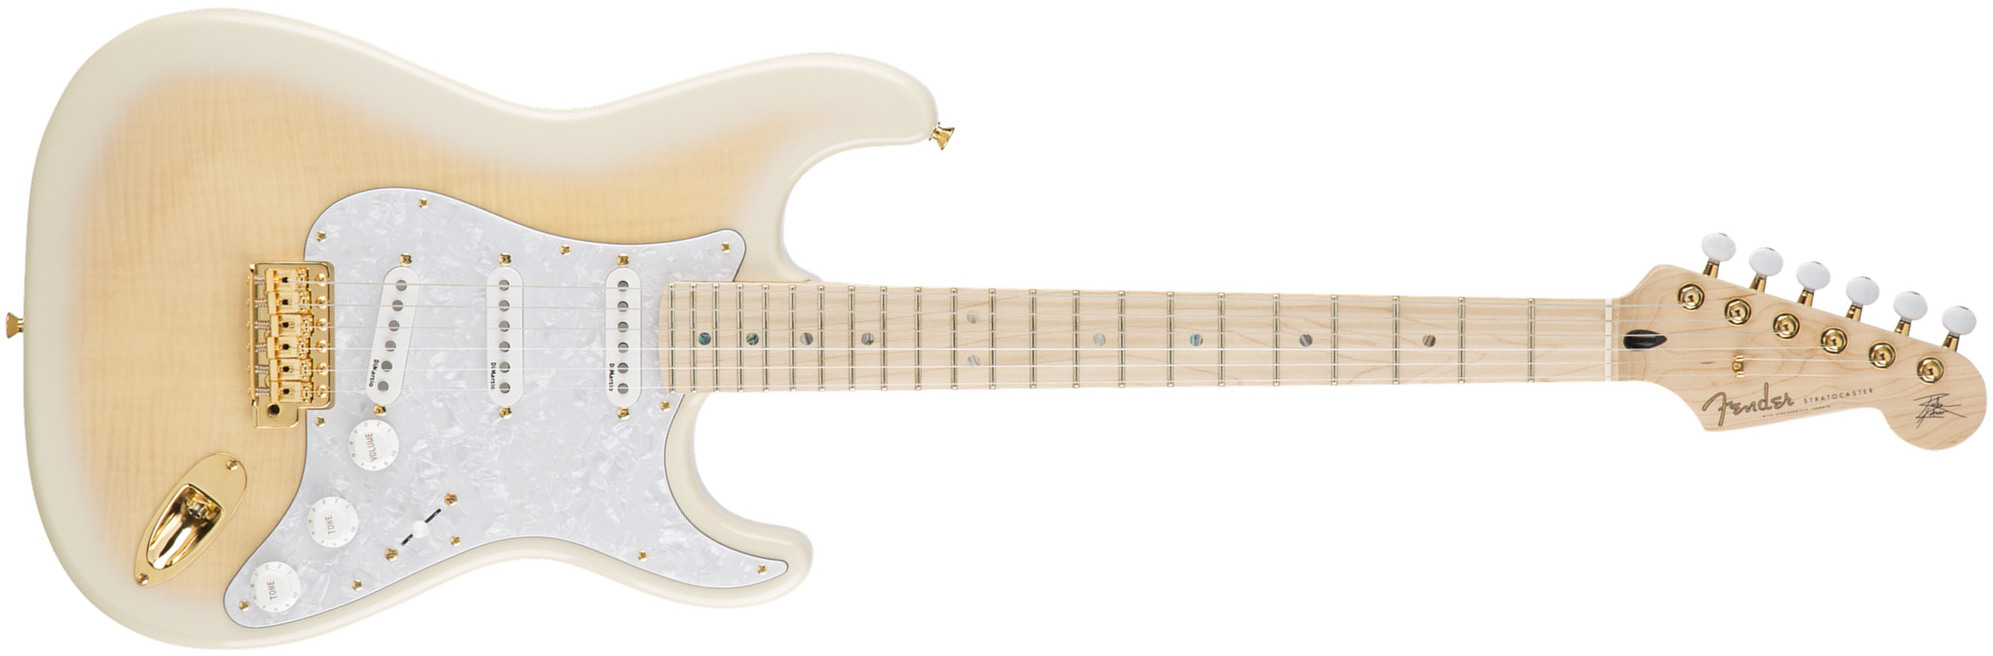 Fender Richie Kotzen Strat Jap Signature 3s Dimarzio Trem Mn - Transparent White Burst - Guitarra eléctrica con forma de str. - Main picture